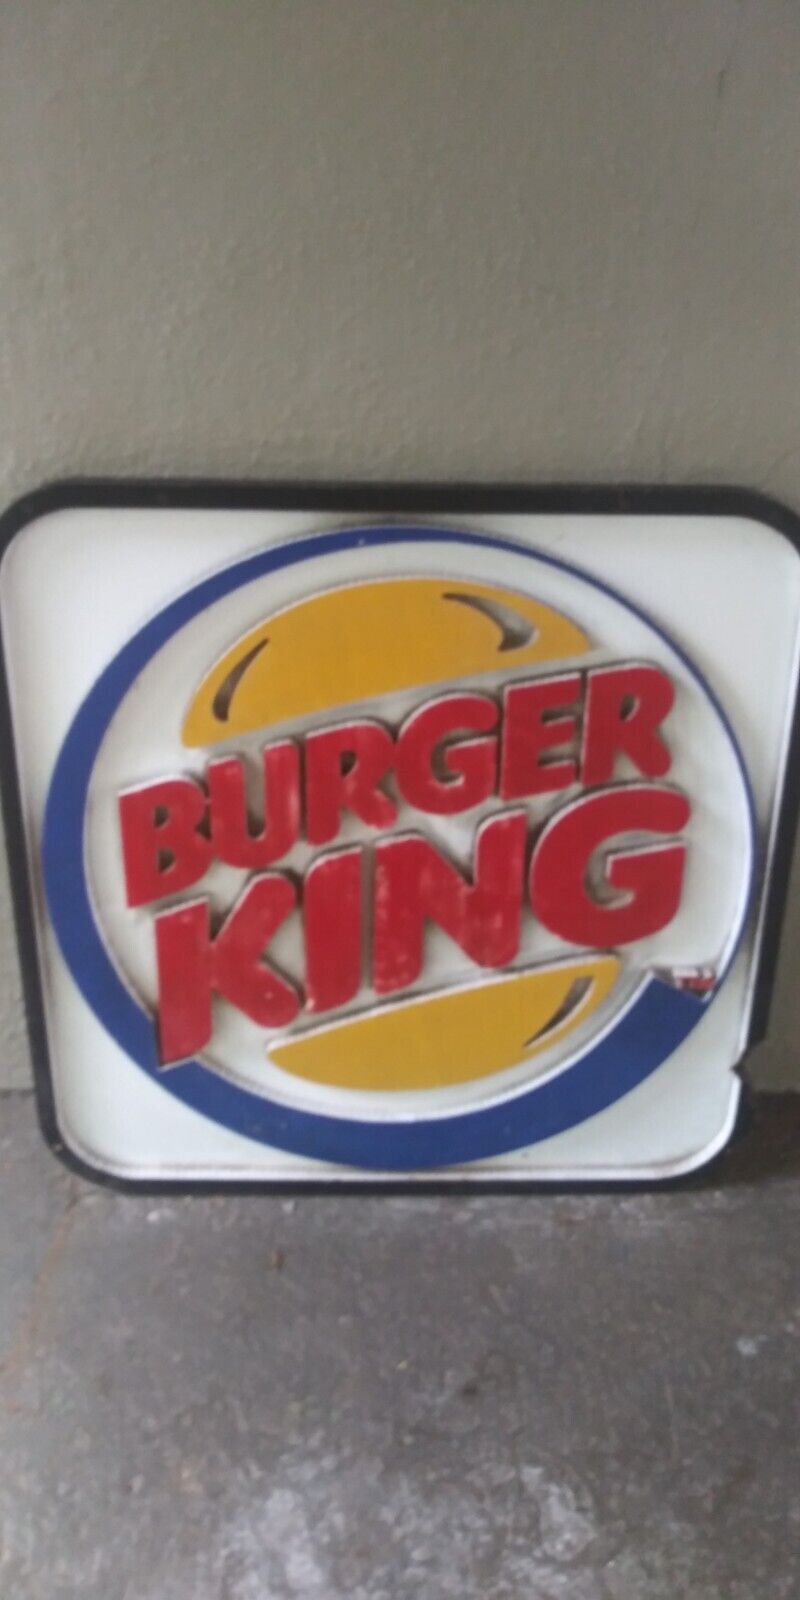 Vintage Burger King 1980s1990s Original Fast Food Restaurant Drive Thru Sign Old